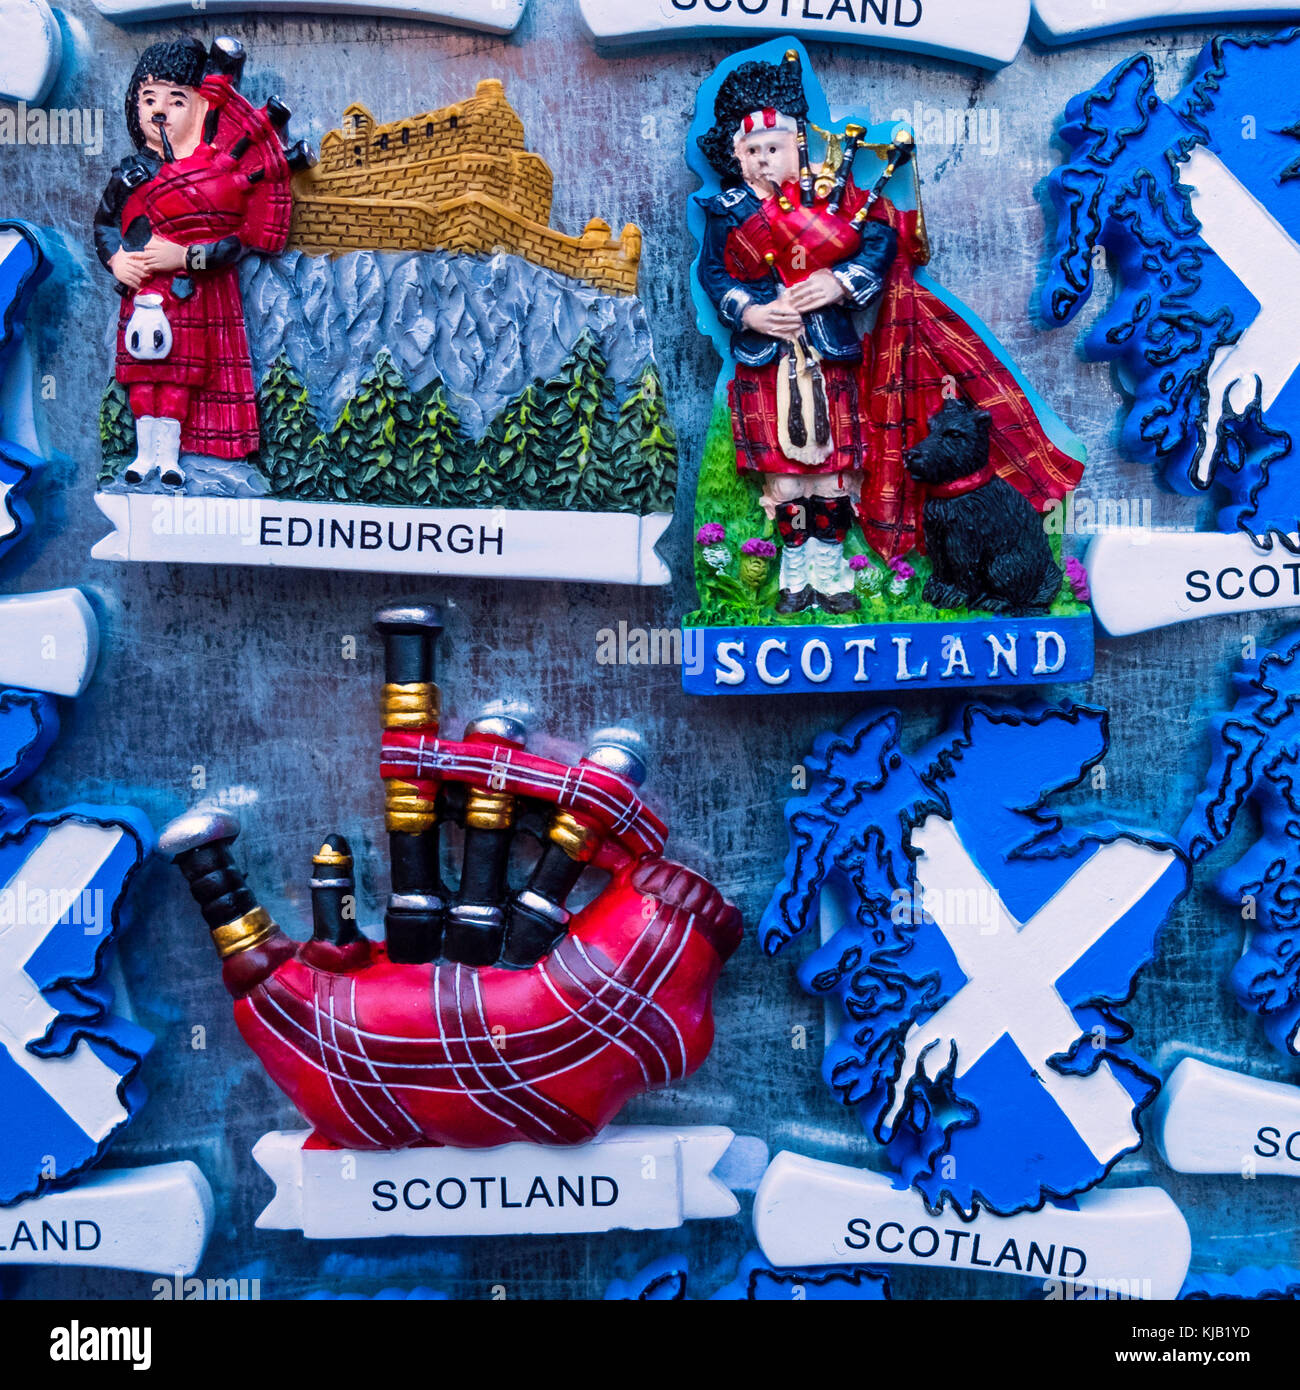 Magneti per frigoriferi turistici con motivi scozzesi in vendita nel negozio di souvenir turistico di Edimburgo, Scozia, Regno Unito. Foto Stock